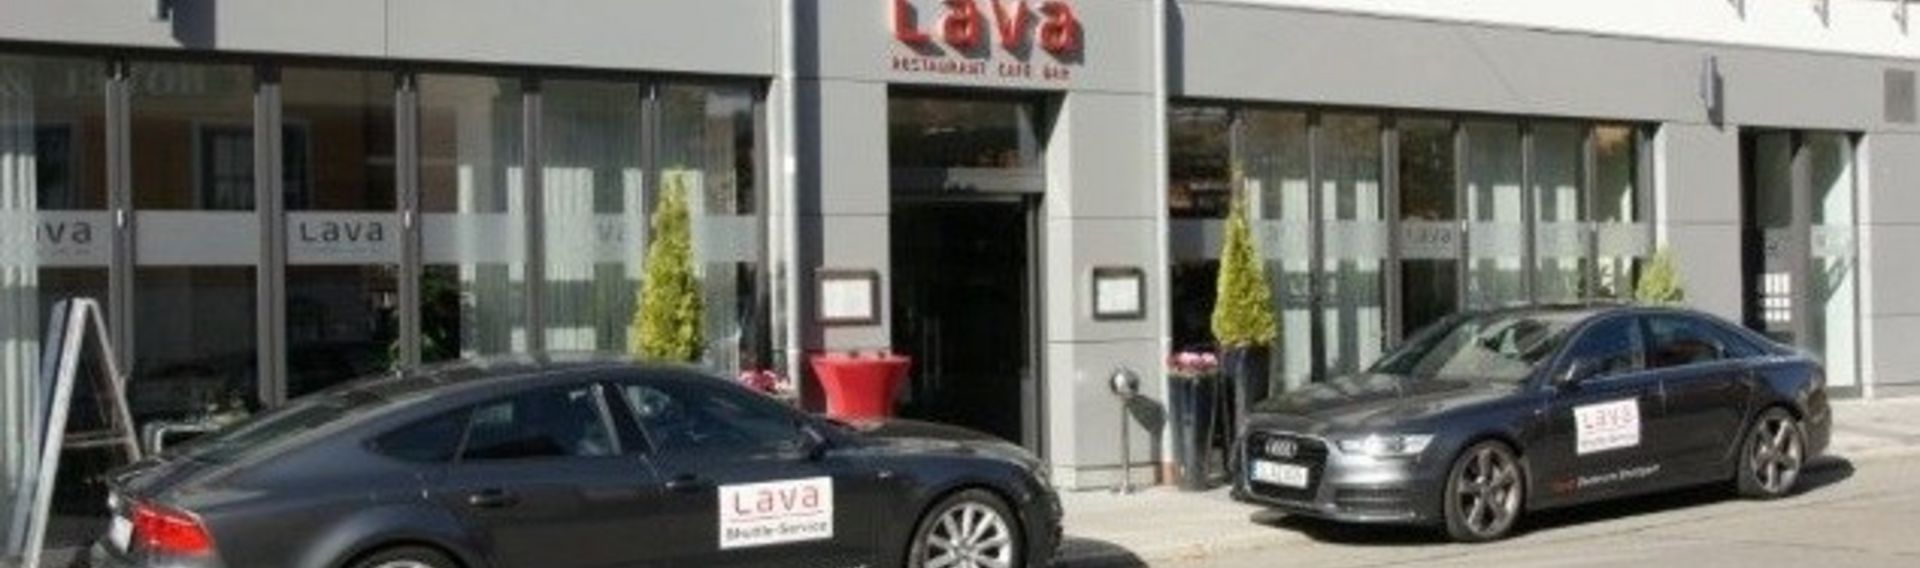 Lava Stuttgart – Restaurant Hunde willkommen